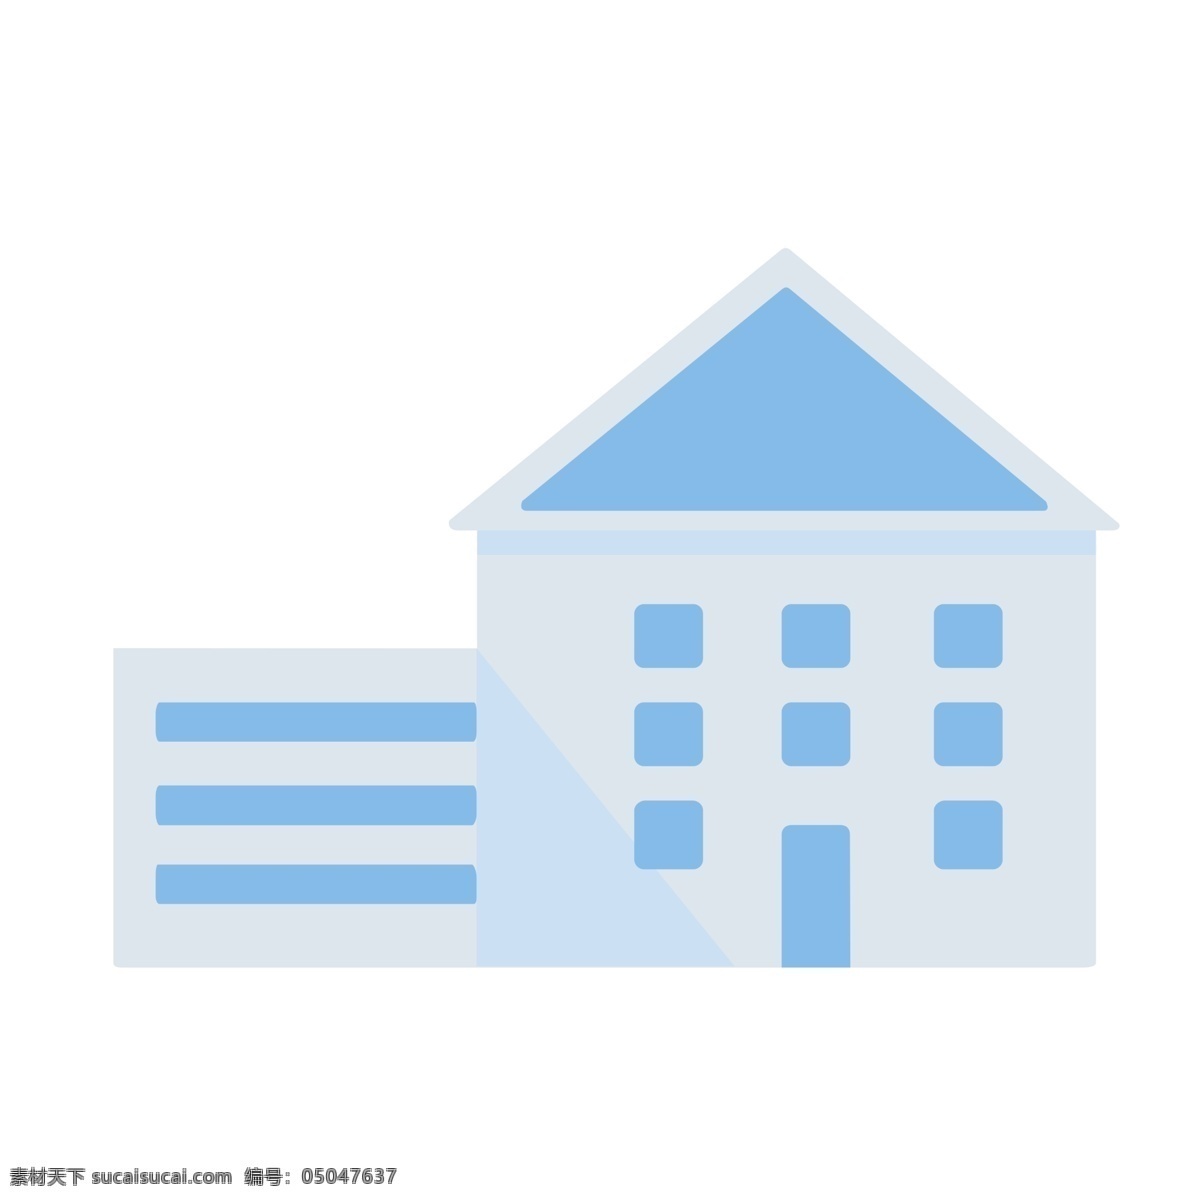 房地产 房屋 扁平 风 图 房产 扁平化 平面 矢量 可换色 分层 免抠 屋子 房子 图标 简易 简约 简单